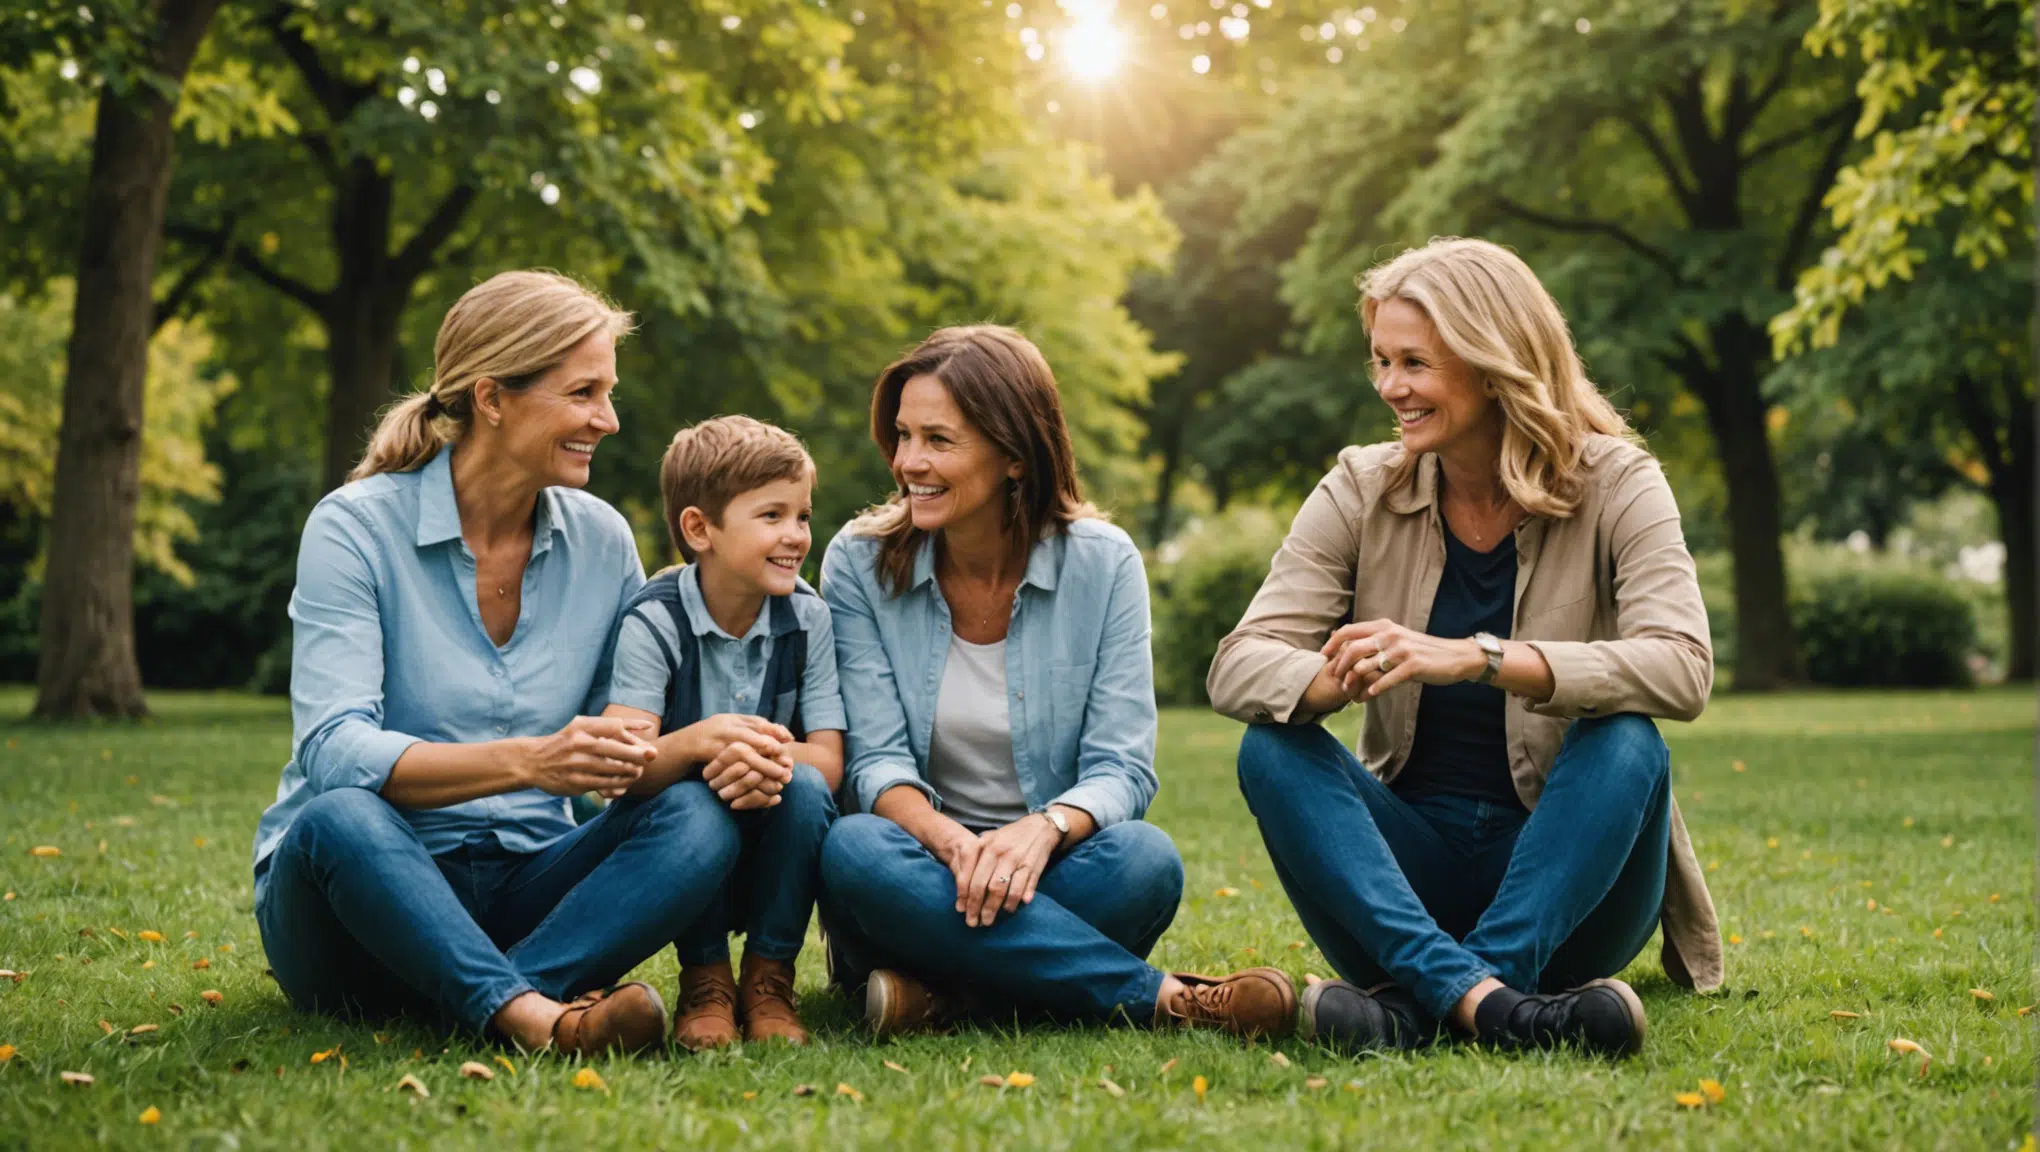 découvrez des conseils pratiques pour surmonter les obstacles liés à la connectivité familiale et renforcer les liens au sein de votre famille.